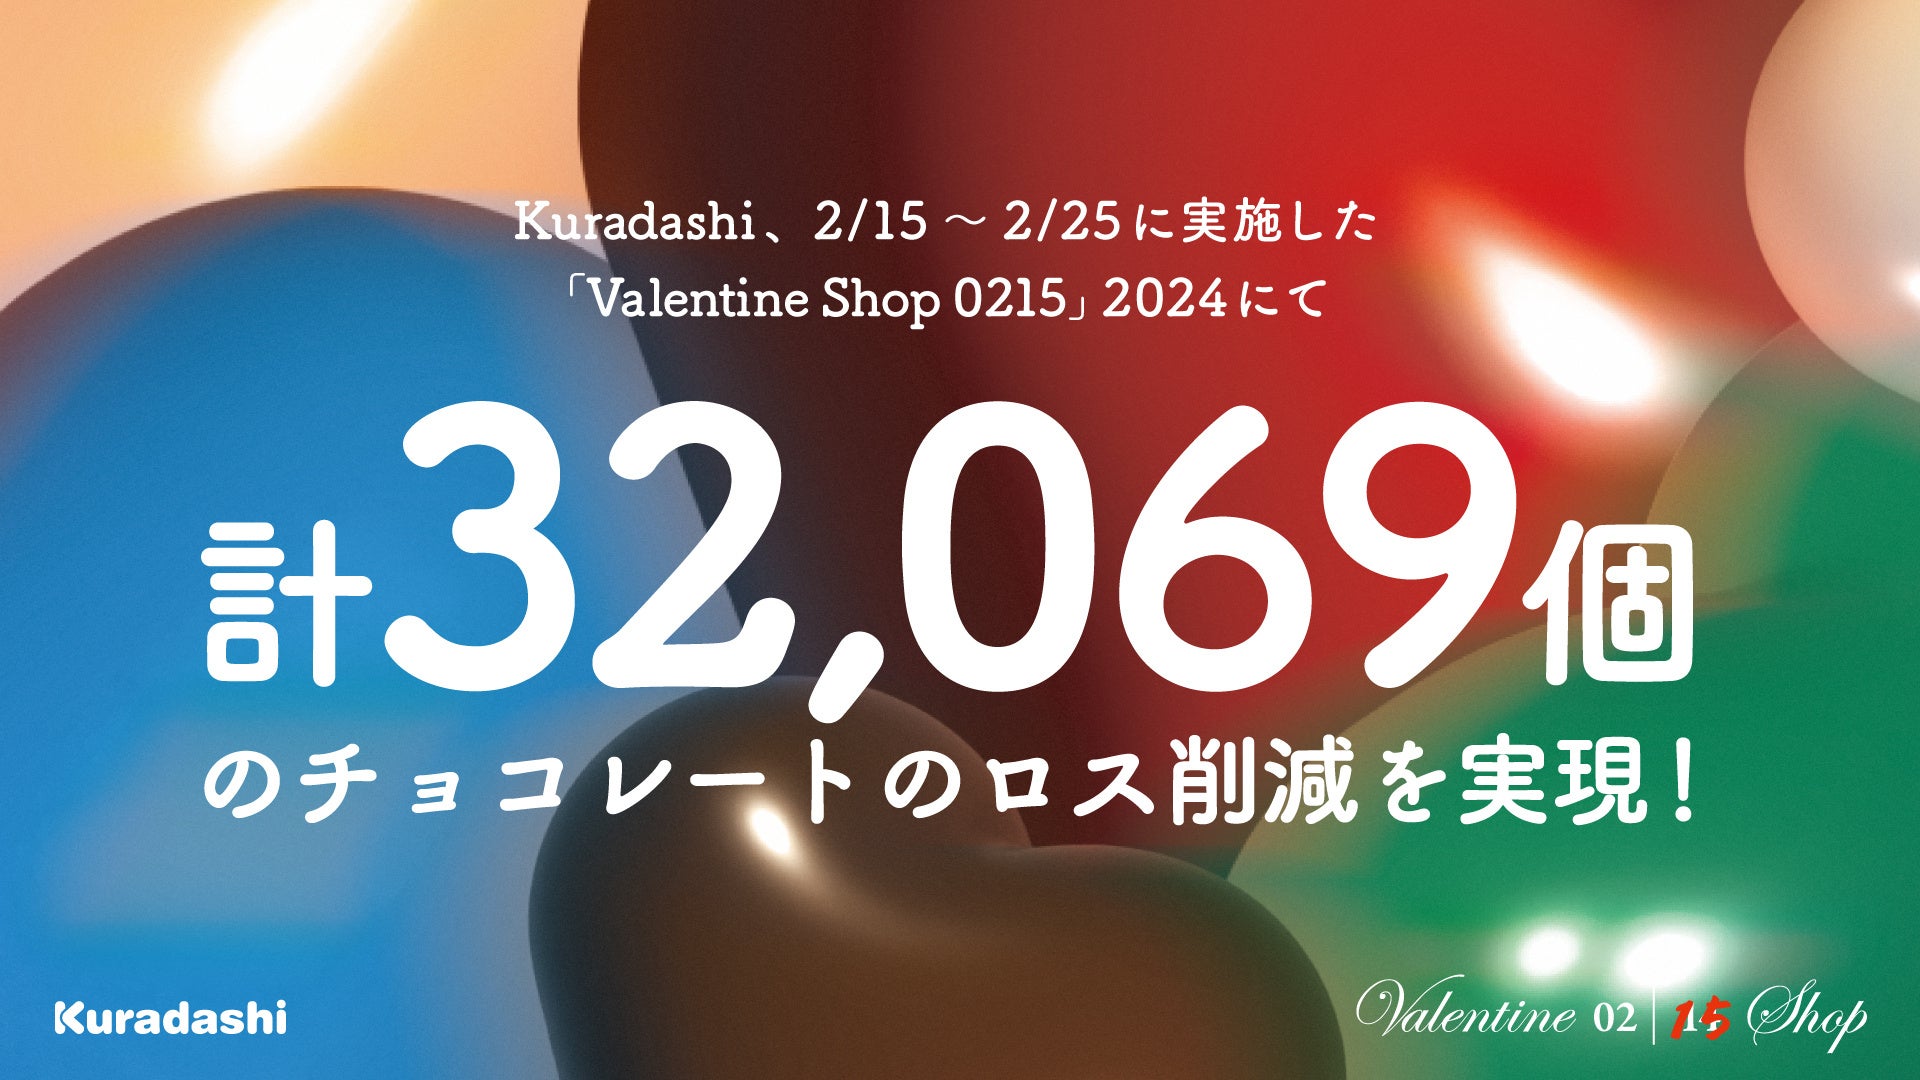 「私たちのバレンタインは2月15日から始まります。」Kuradashi、バレンタイン商品のロス削減を目指した取り組みで32,069個のチョコレートのロスを削減